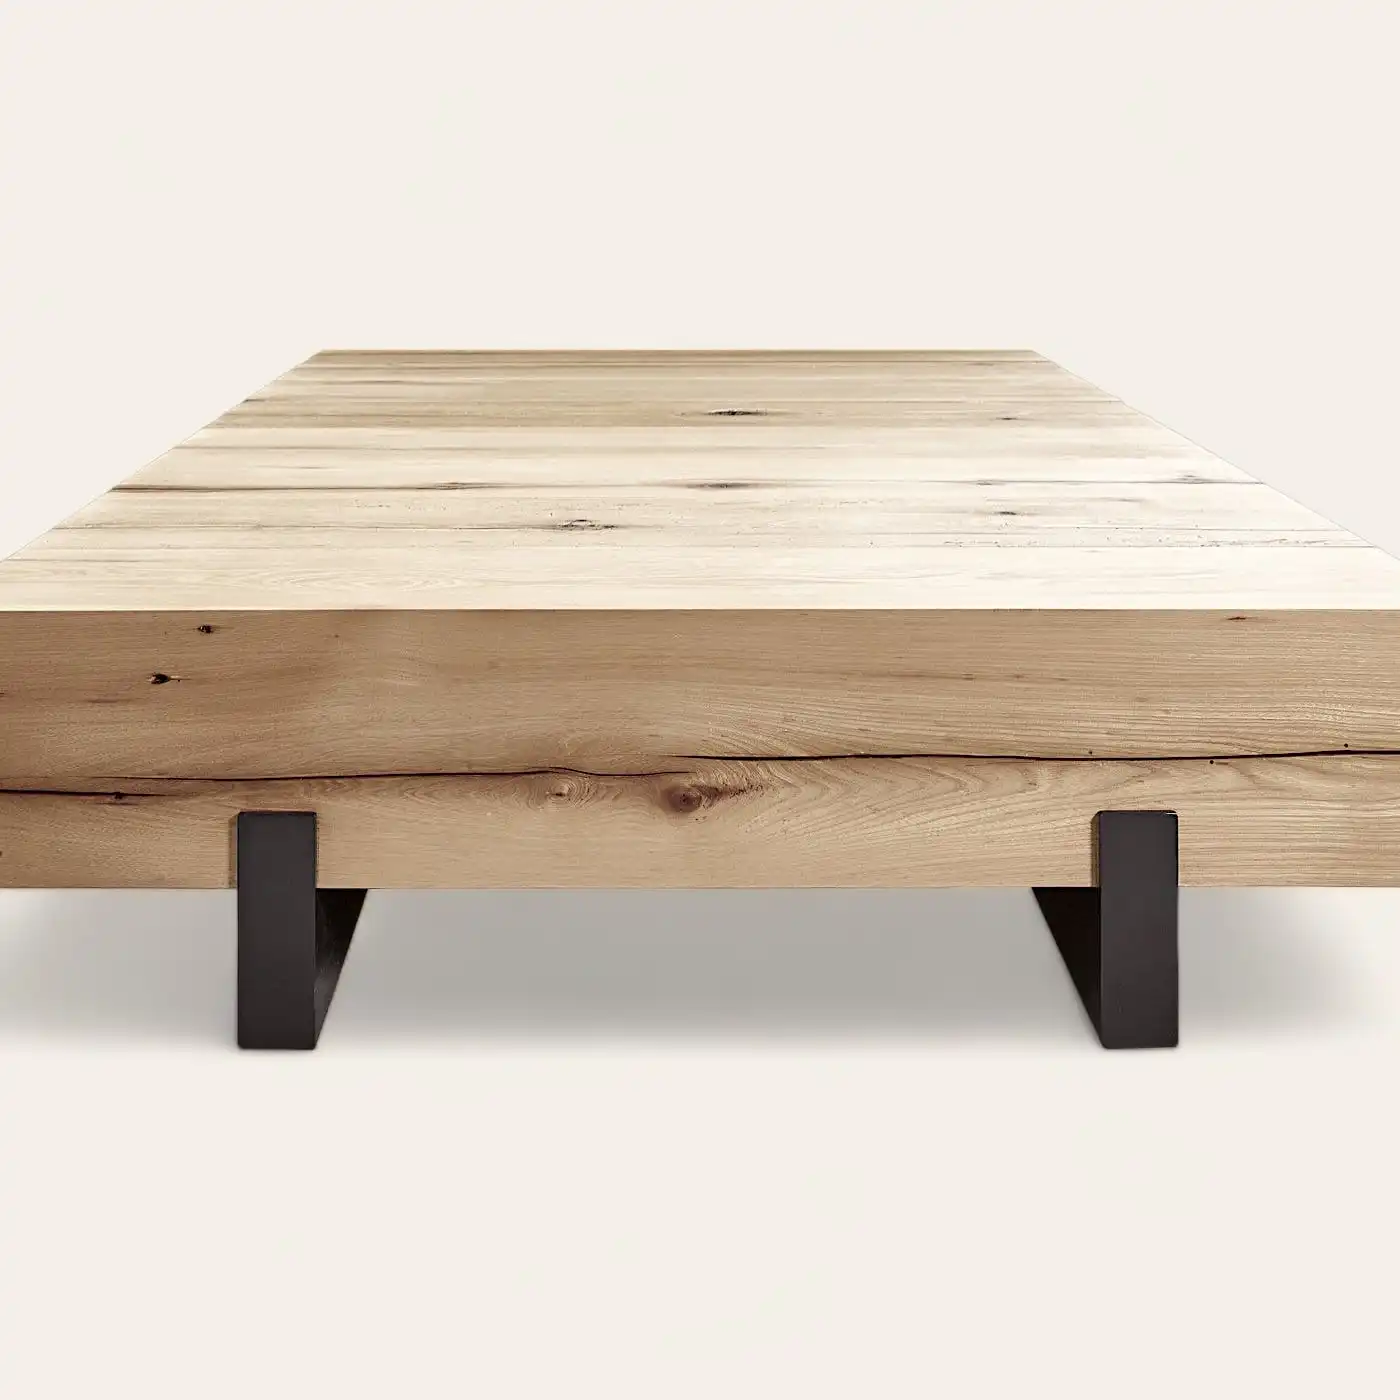  Une table basse en bois rustique avec des pieds noirs sur fond blanc. 